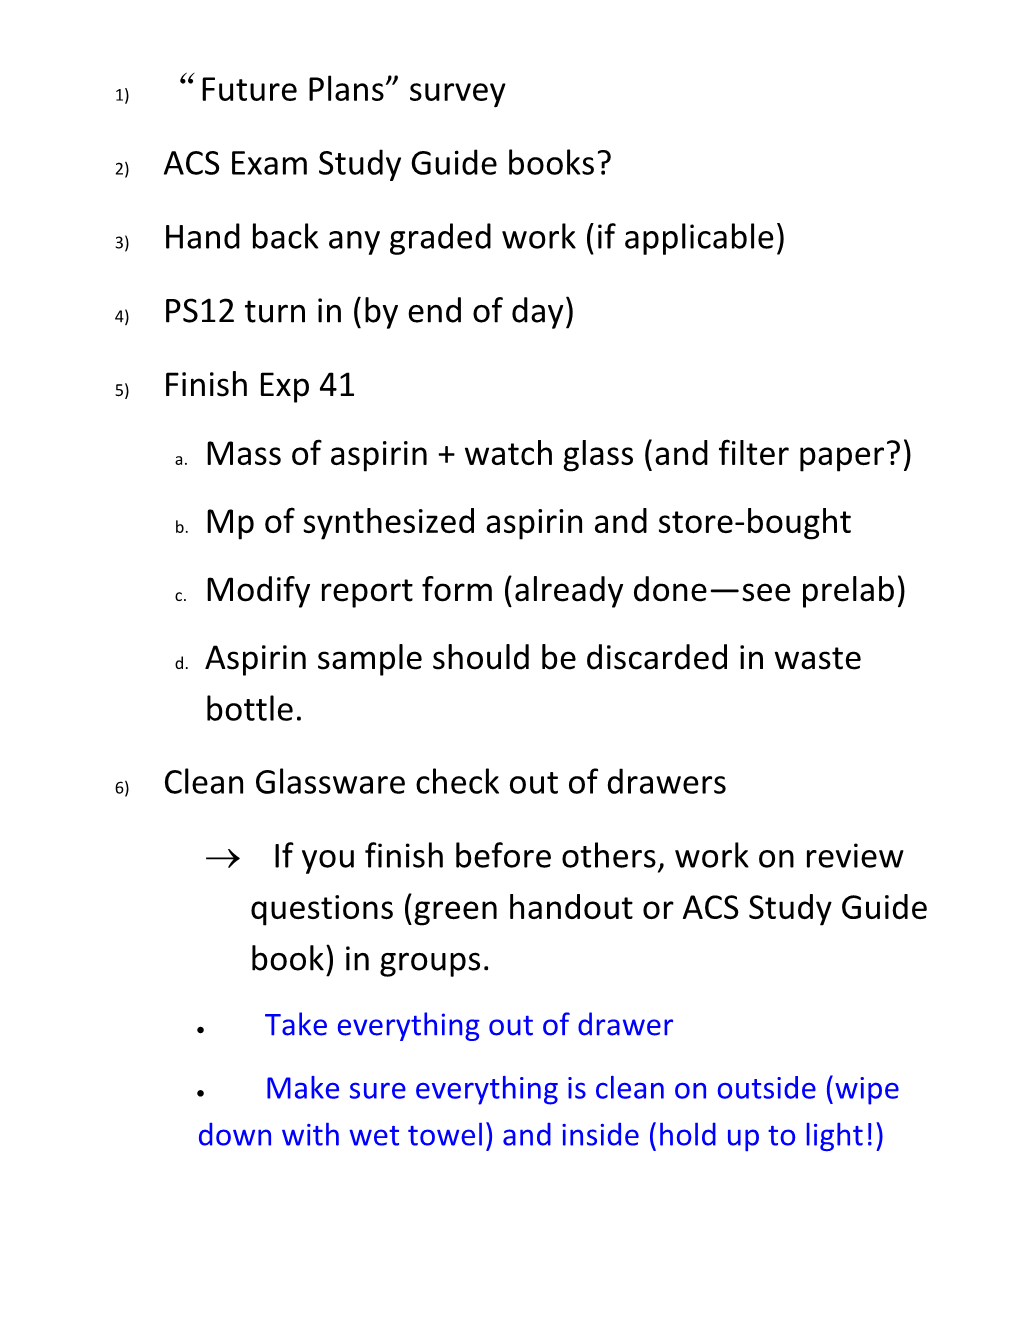 2) ACS Exam Study Guide Books?